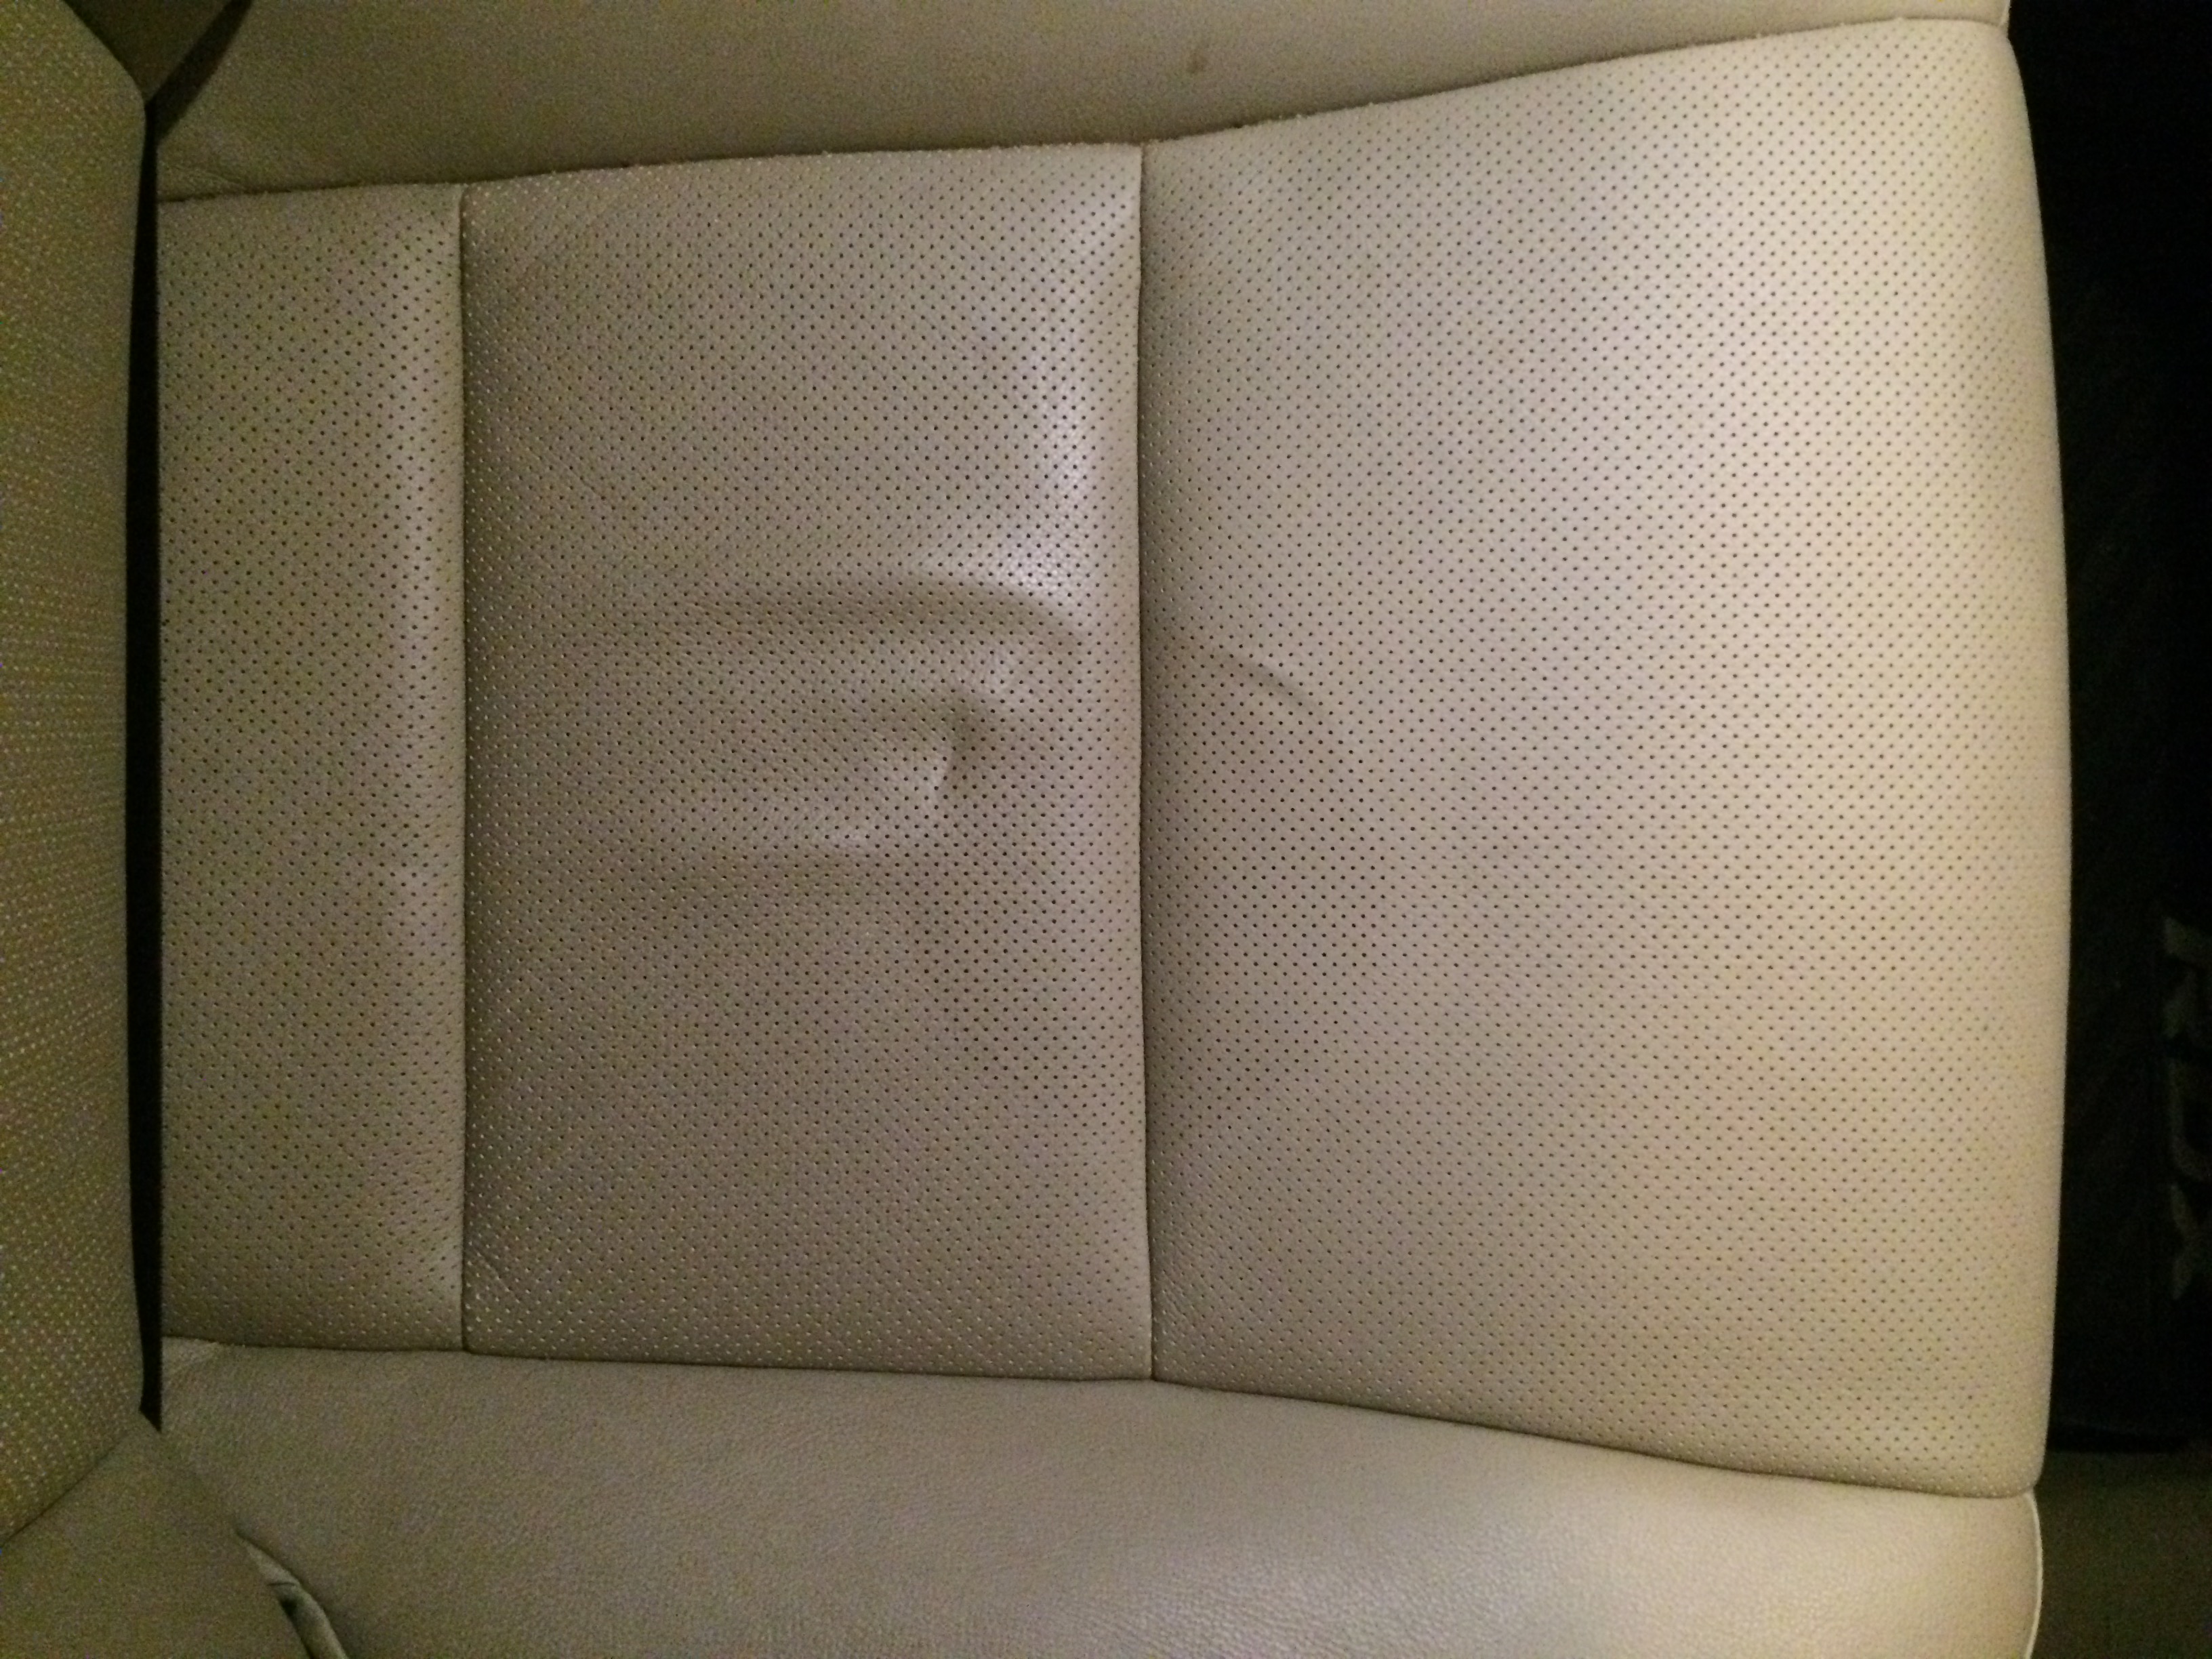 Damaged leather seat - AcuraZine - Acura Enthusiast Community